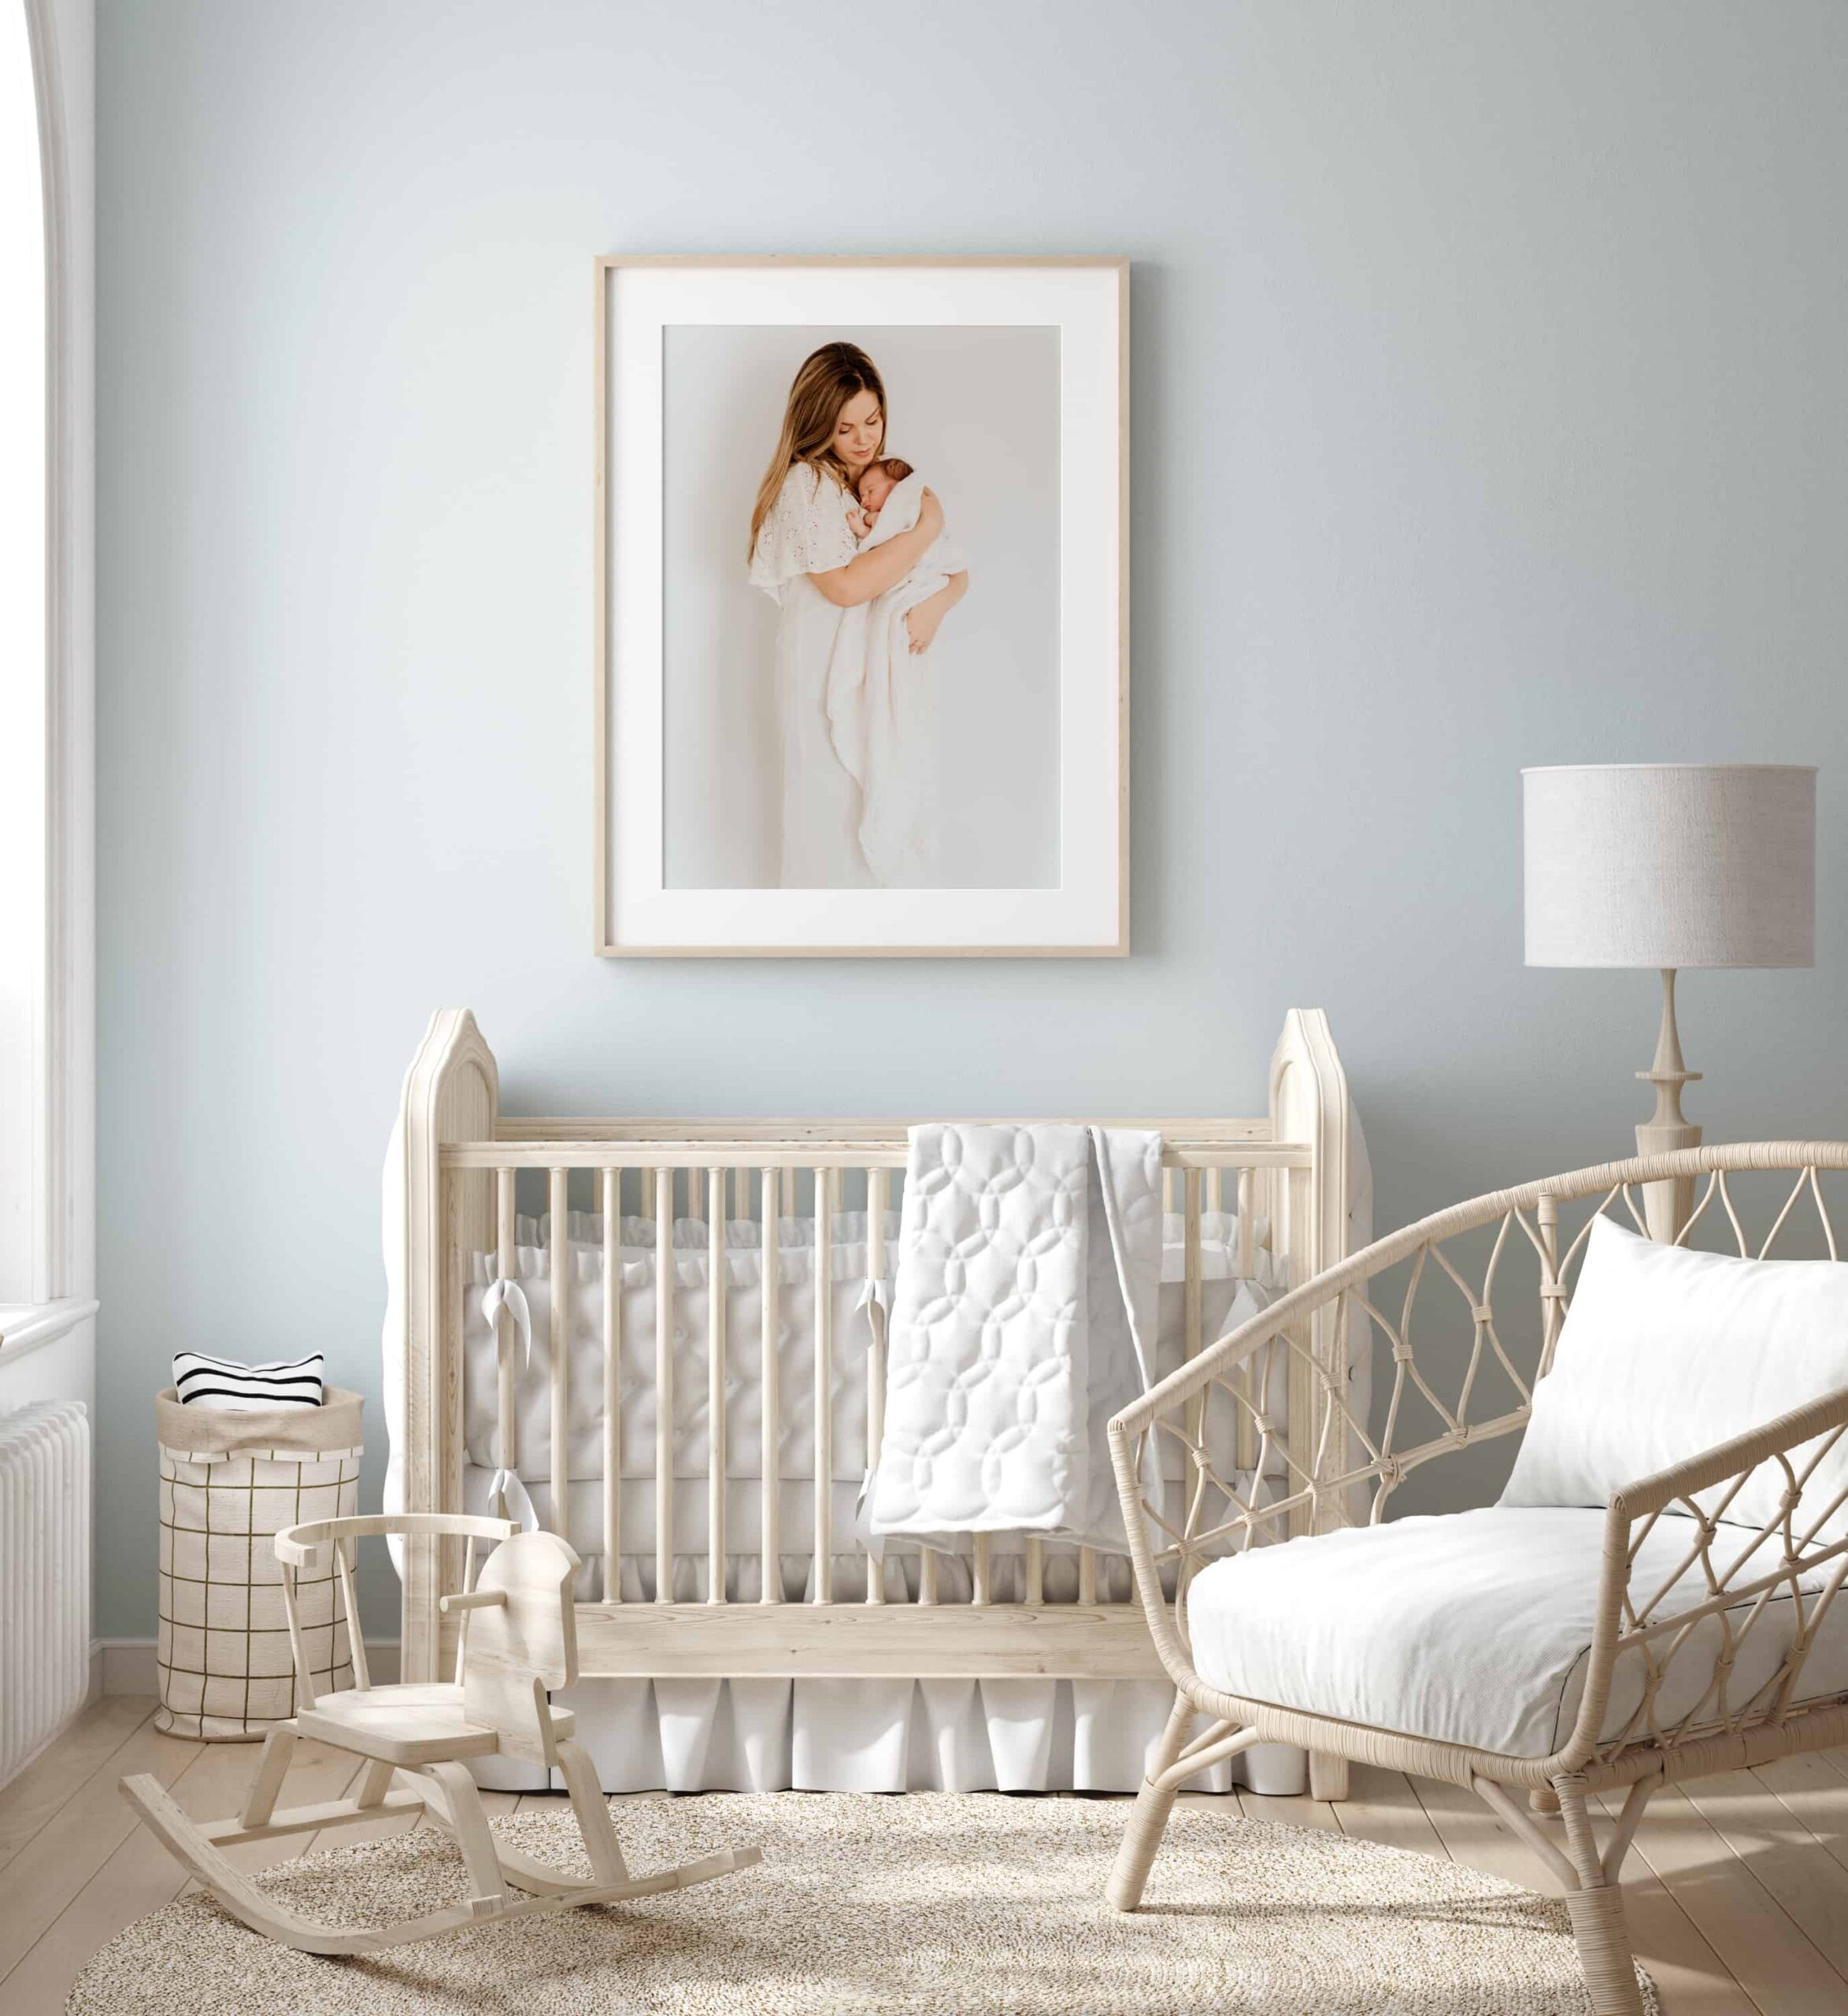 Interiør av et babyrom med et stort bilde fra nyfødtfotografering som henger over senga.